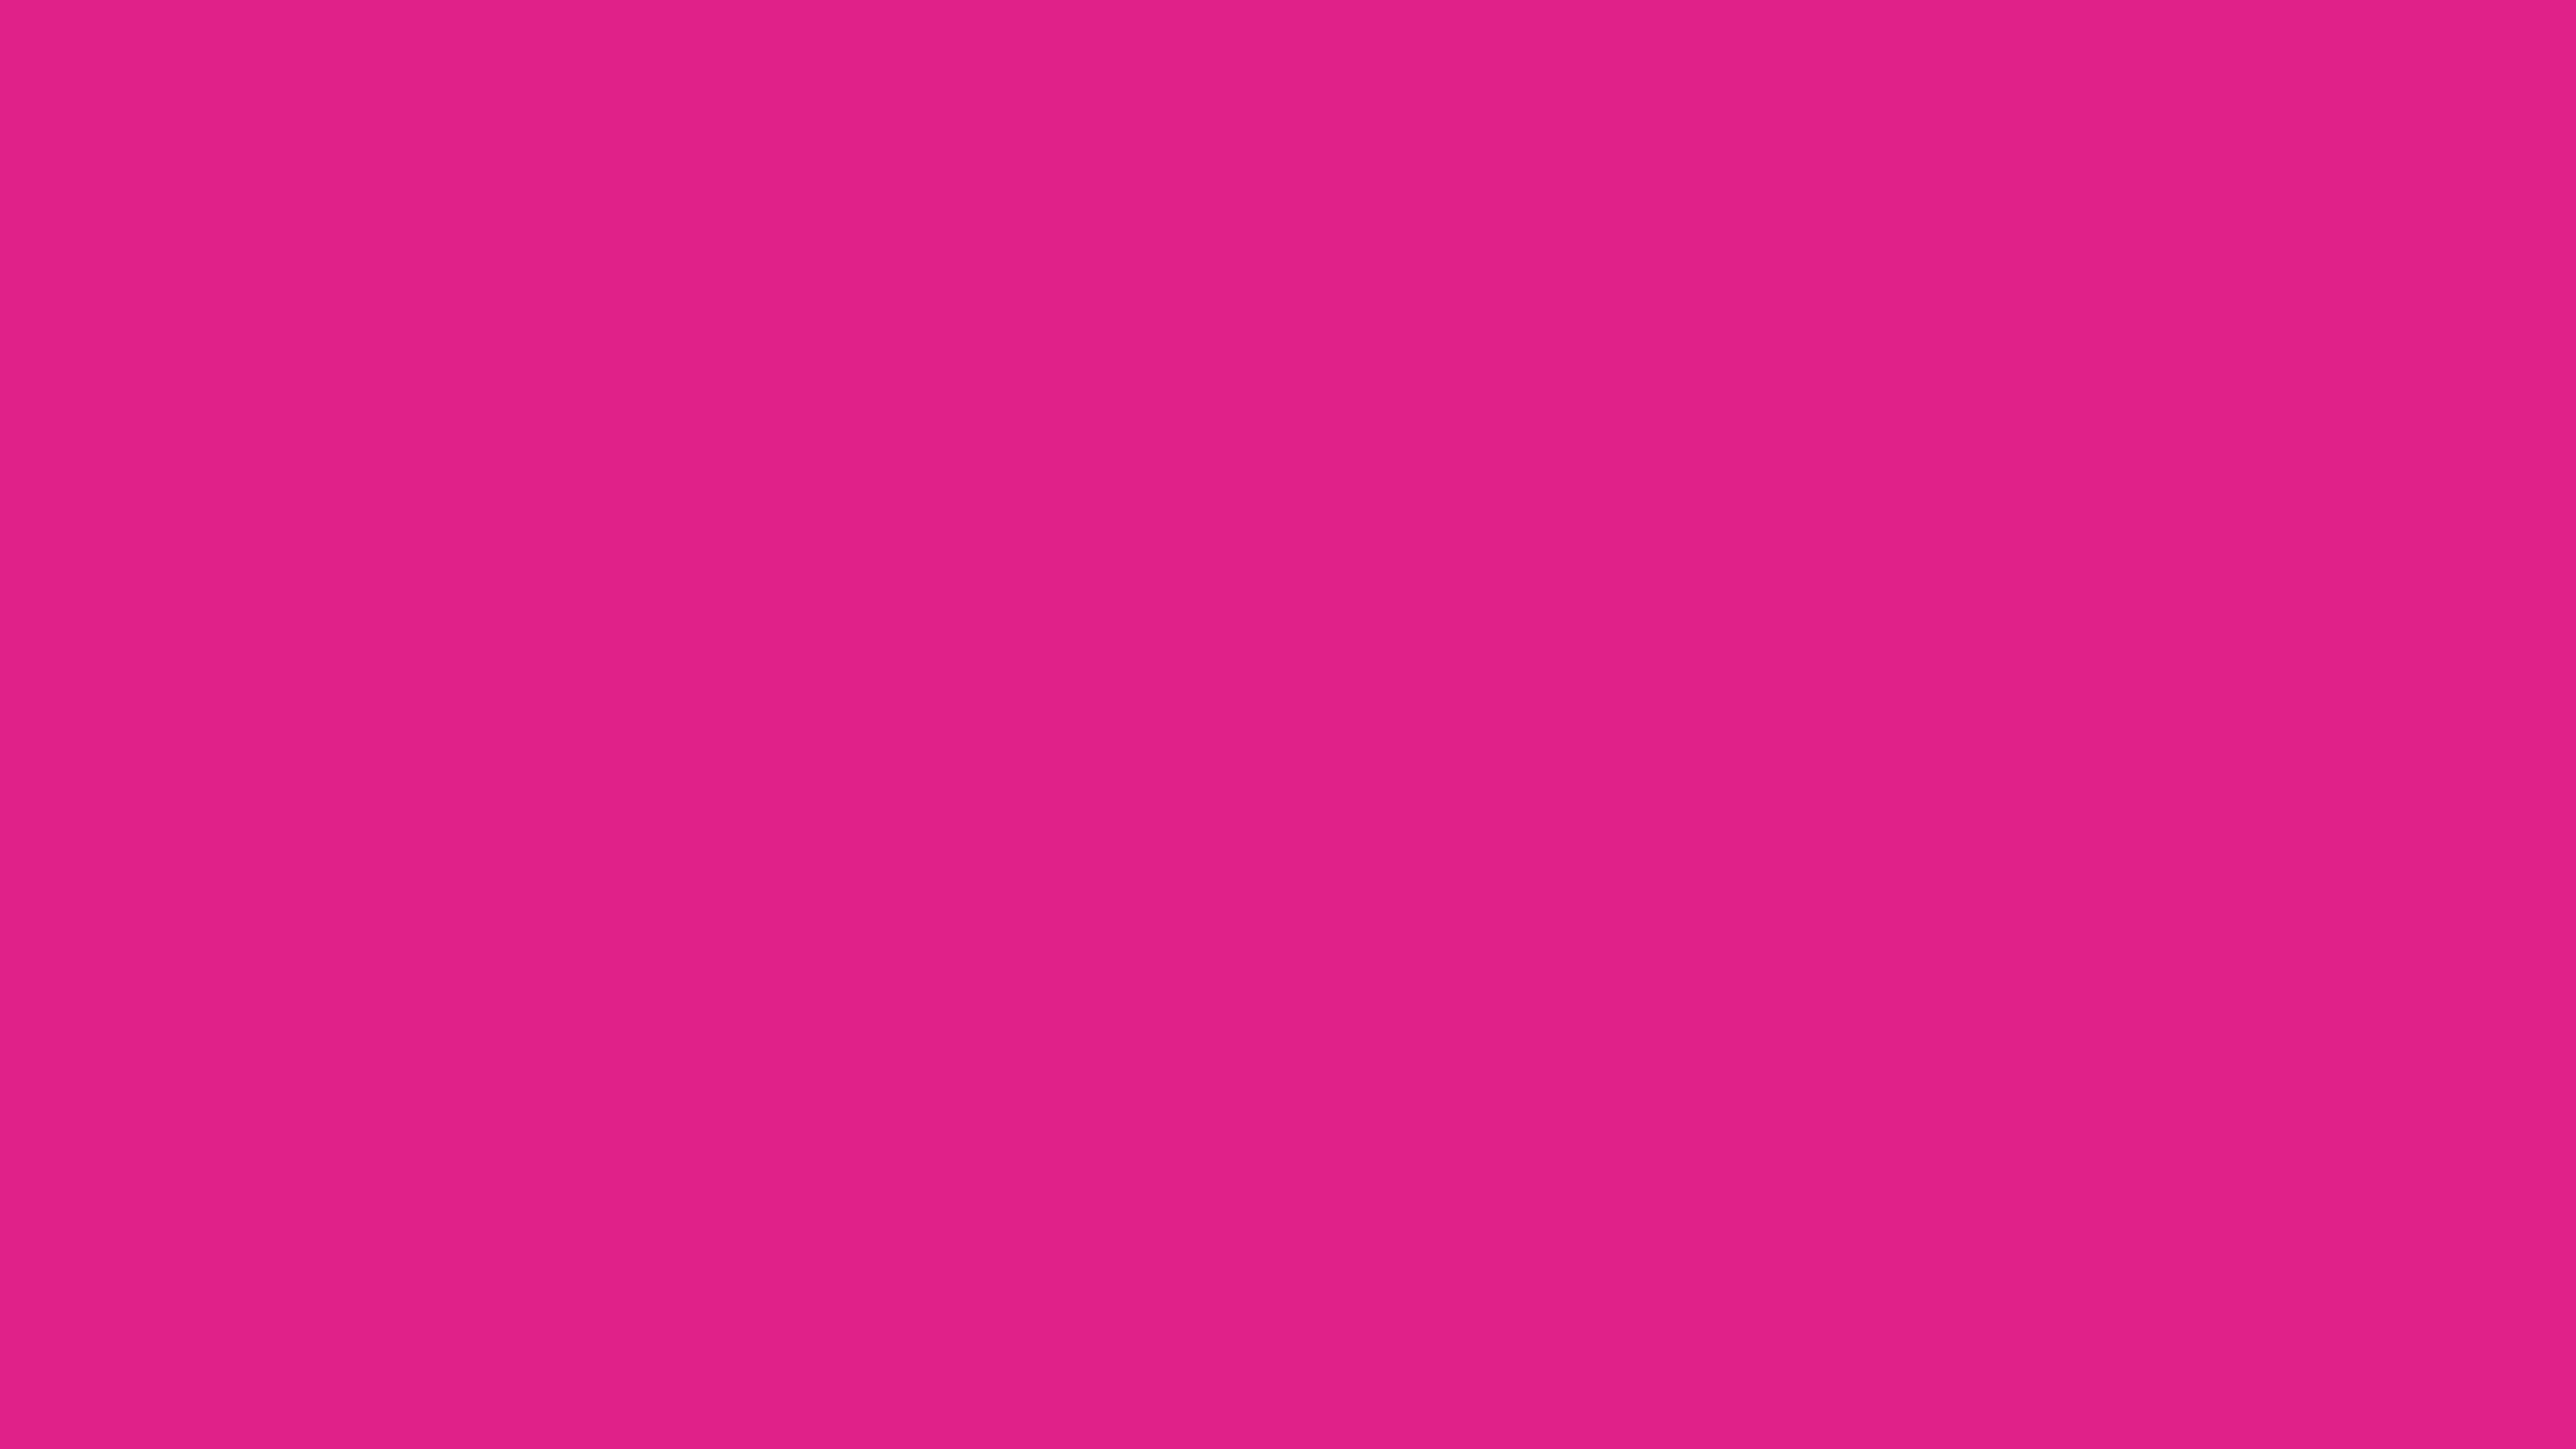 Barbie Pink Solid Color 8K Wallpaper. Wallpaper 4K 5K 8K